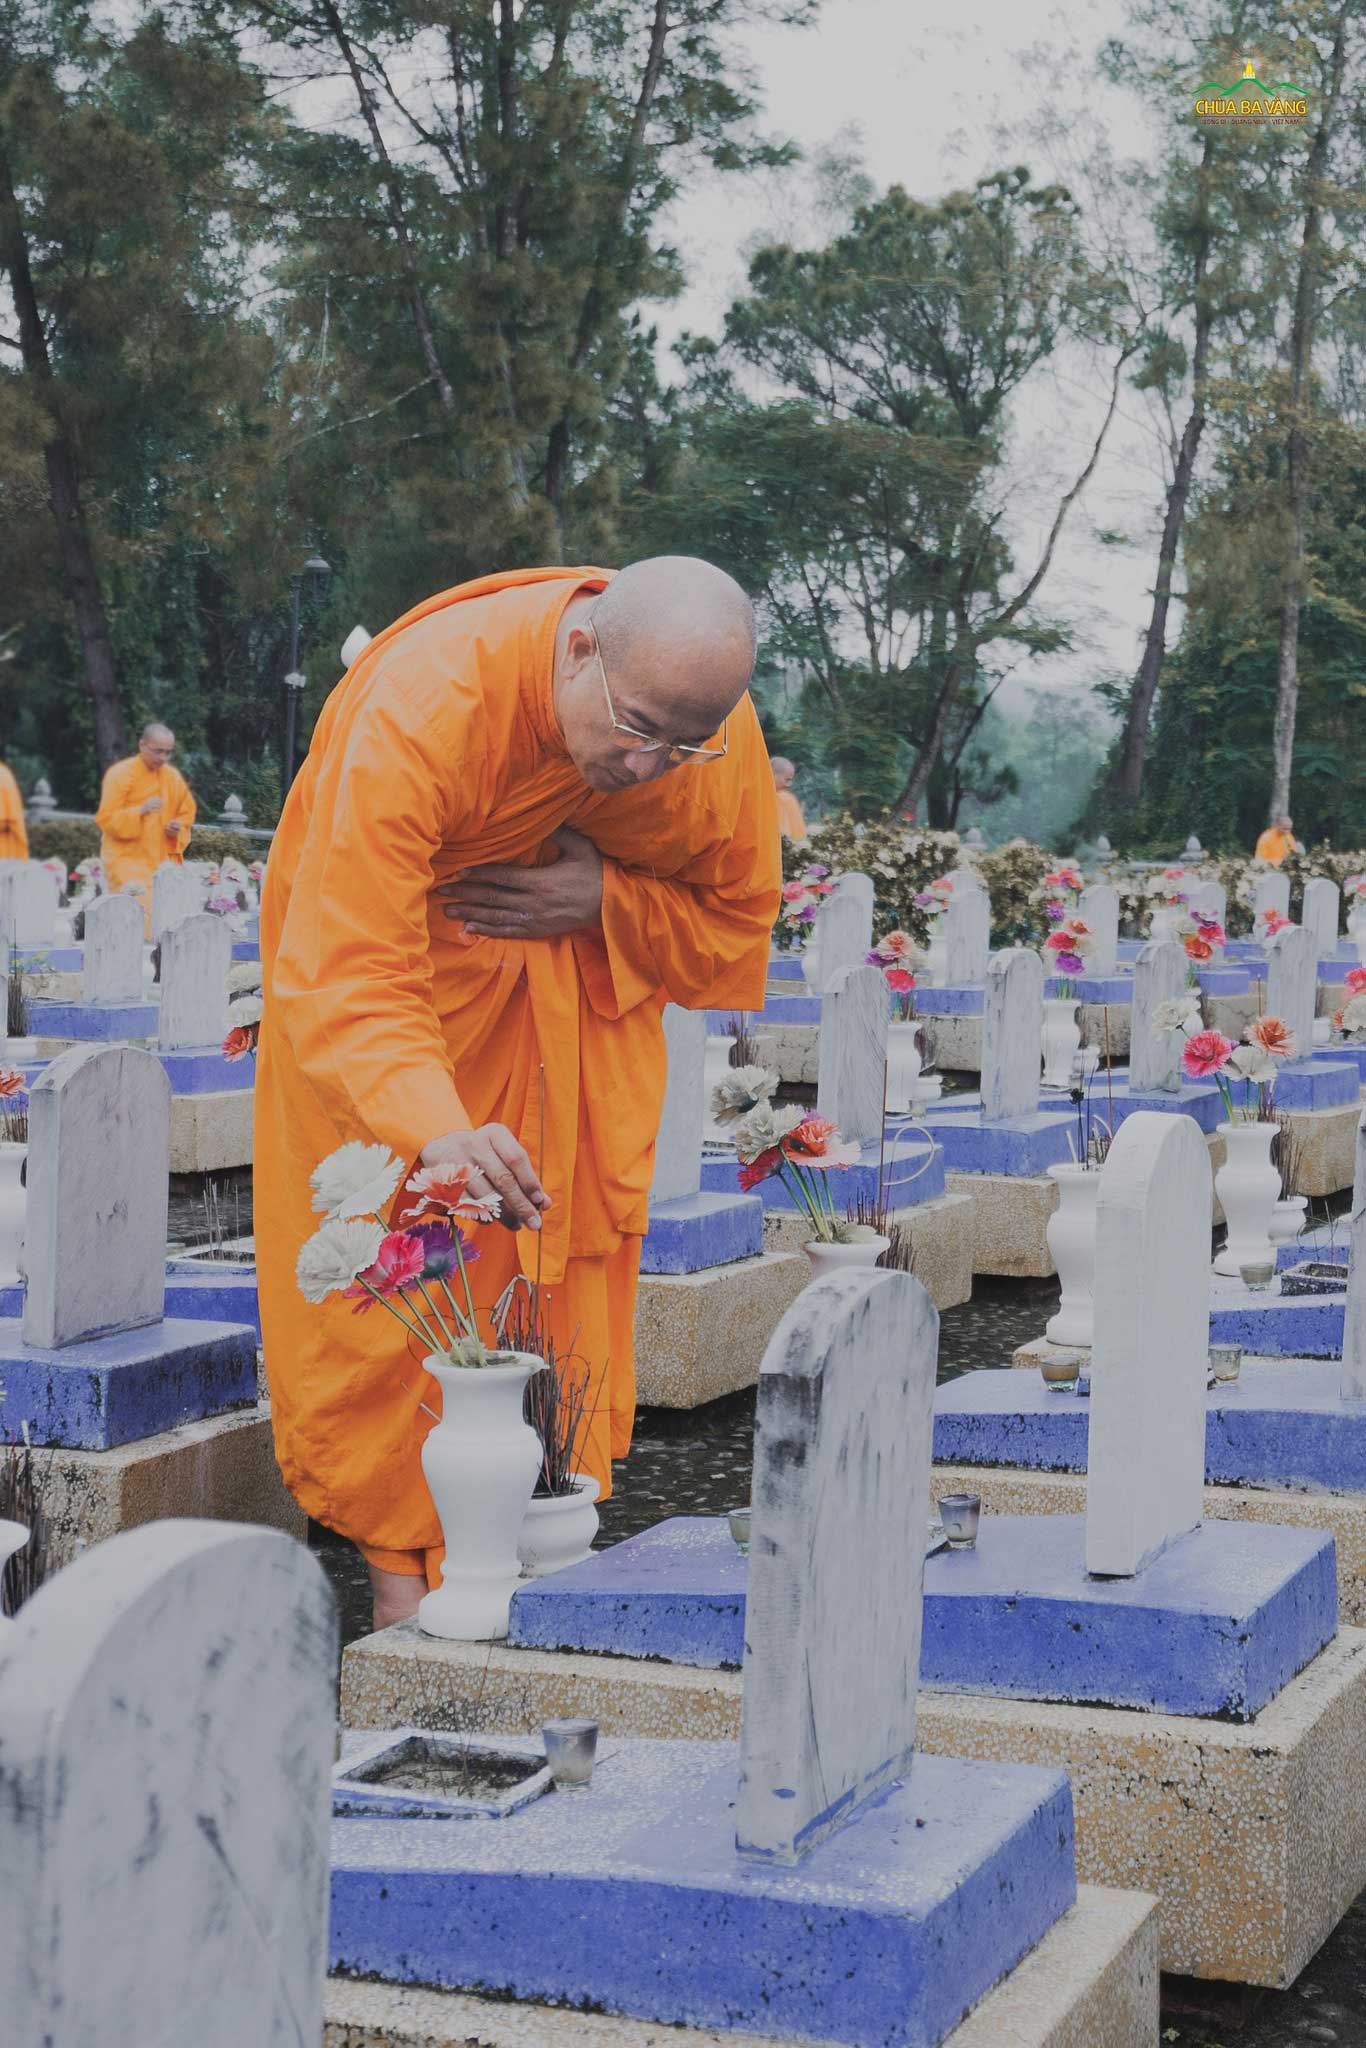 Sư Phụ Thích Trúc Thái Minh thắp nén hương thơm, gửi tấm lòng tri ân đến các anh hùng liệt sĩ đã ngã xuống vì sự nghiệp bảo vệ và giữ gìn đất nước